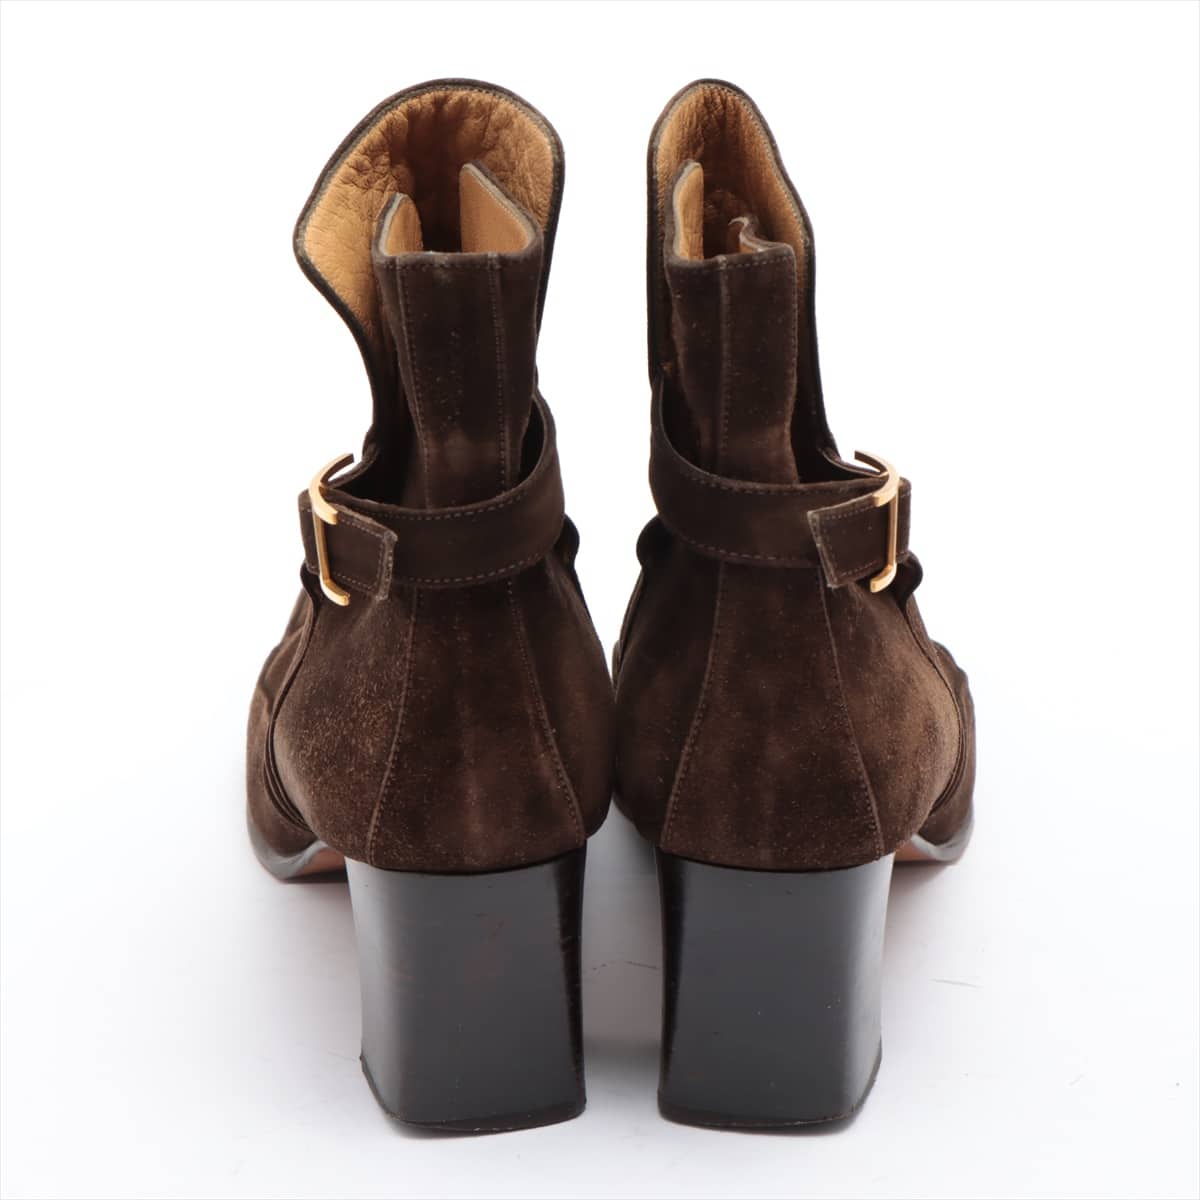 Hermès H buckle Suede Short Boots 37 Ladies' Brown